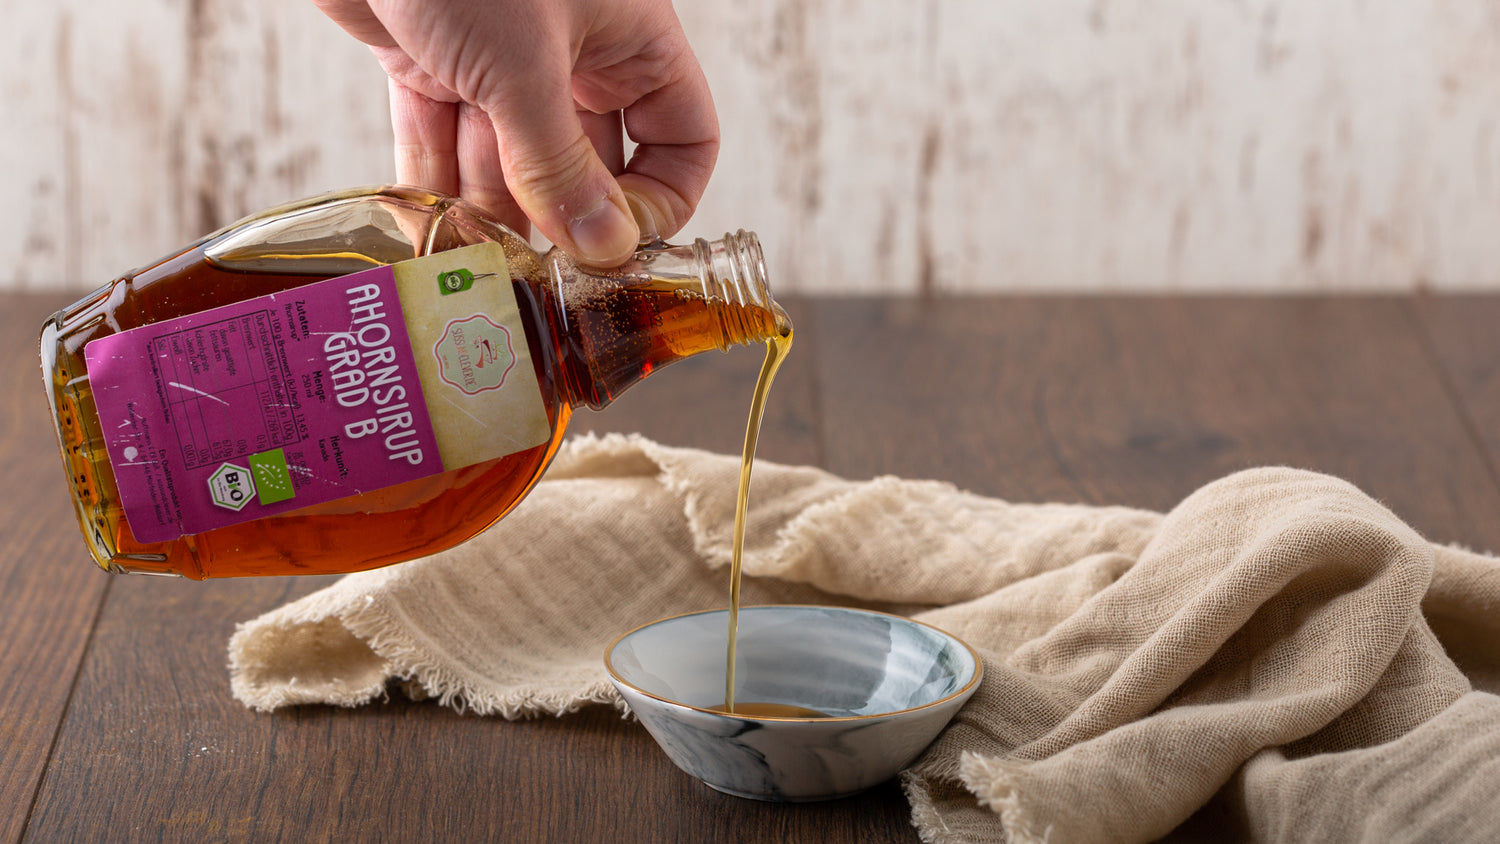 Ahornsirup ist ein aromatisches Süßungsmittel mit der Konsistenz von Honig